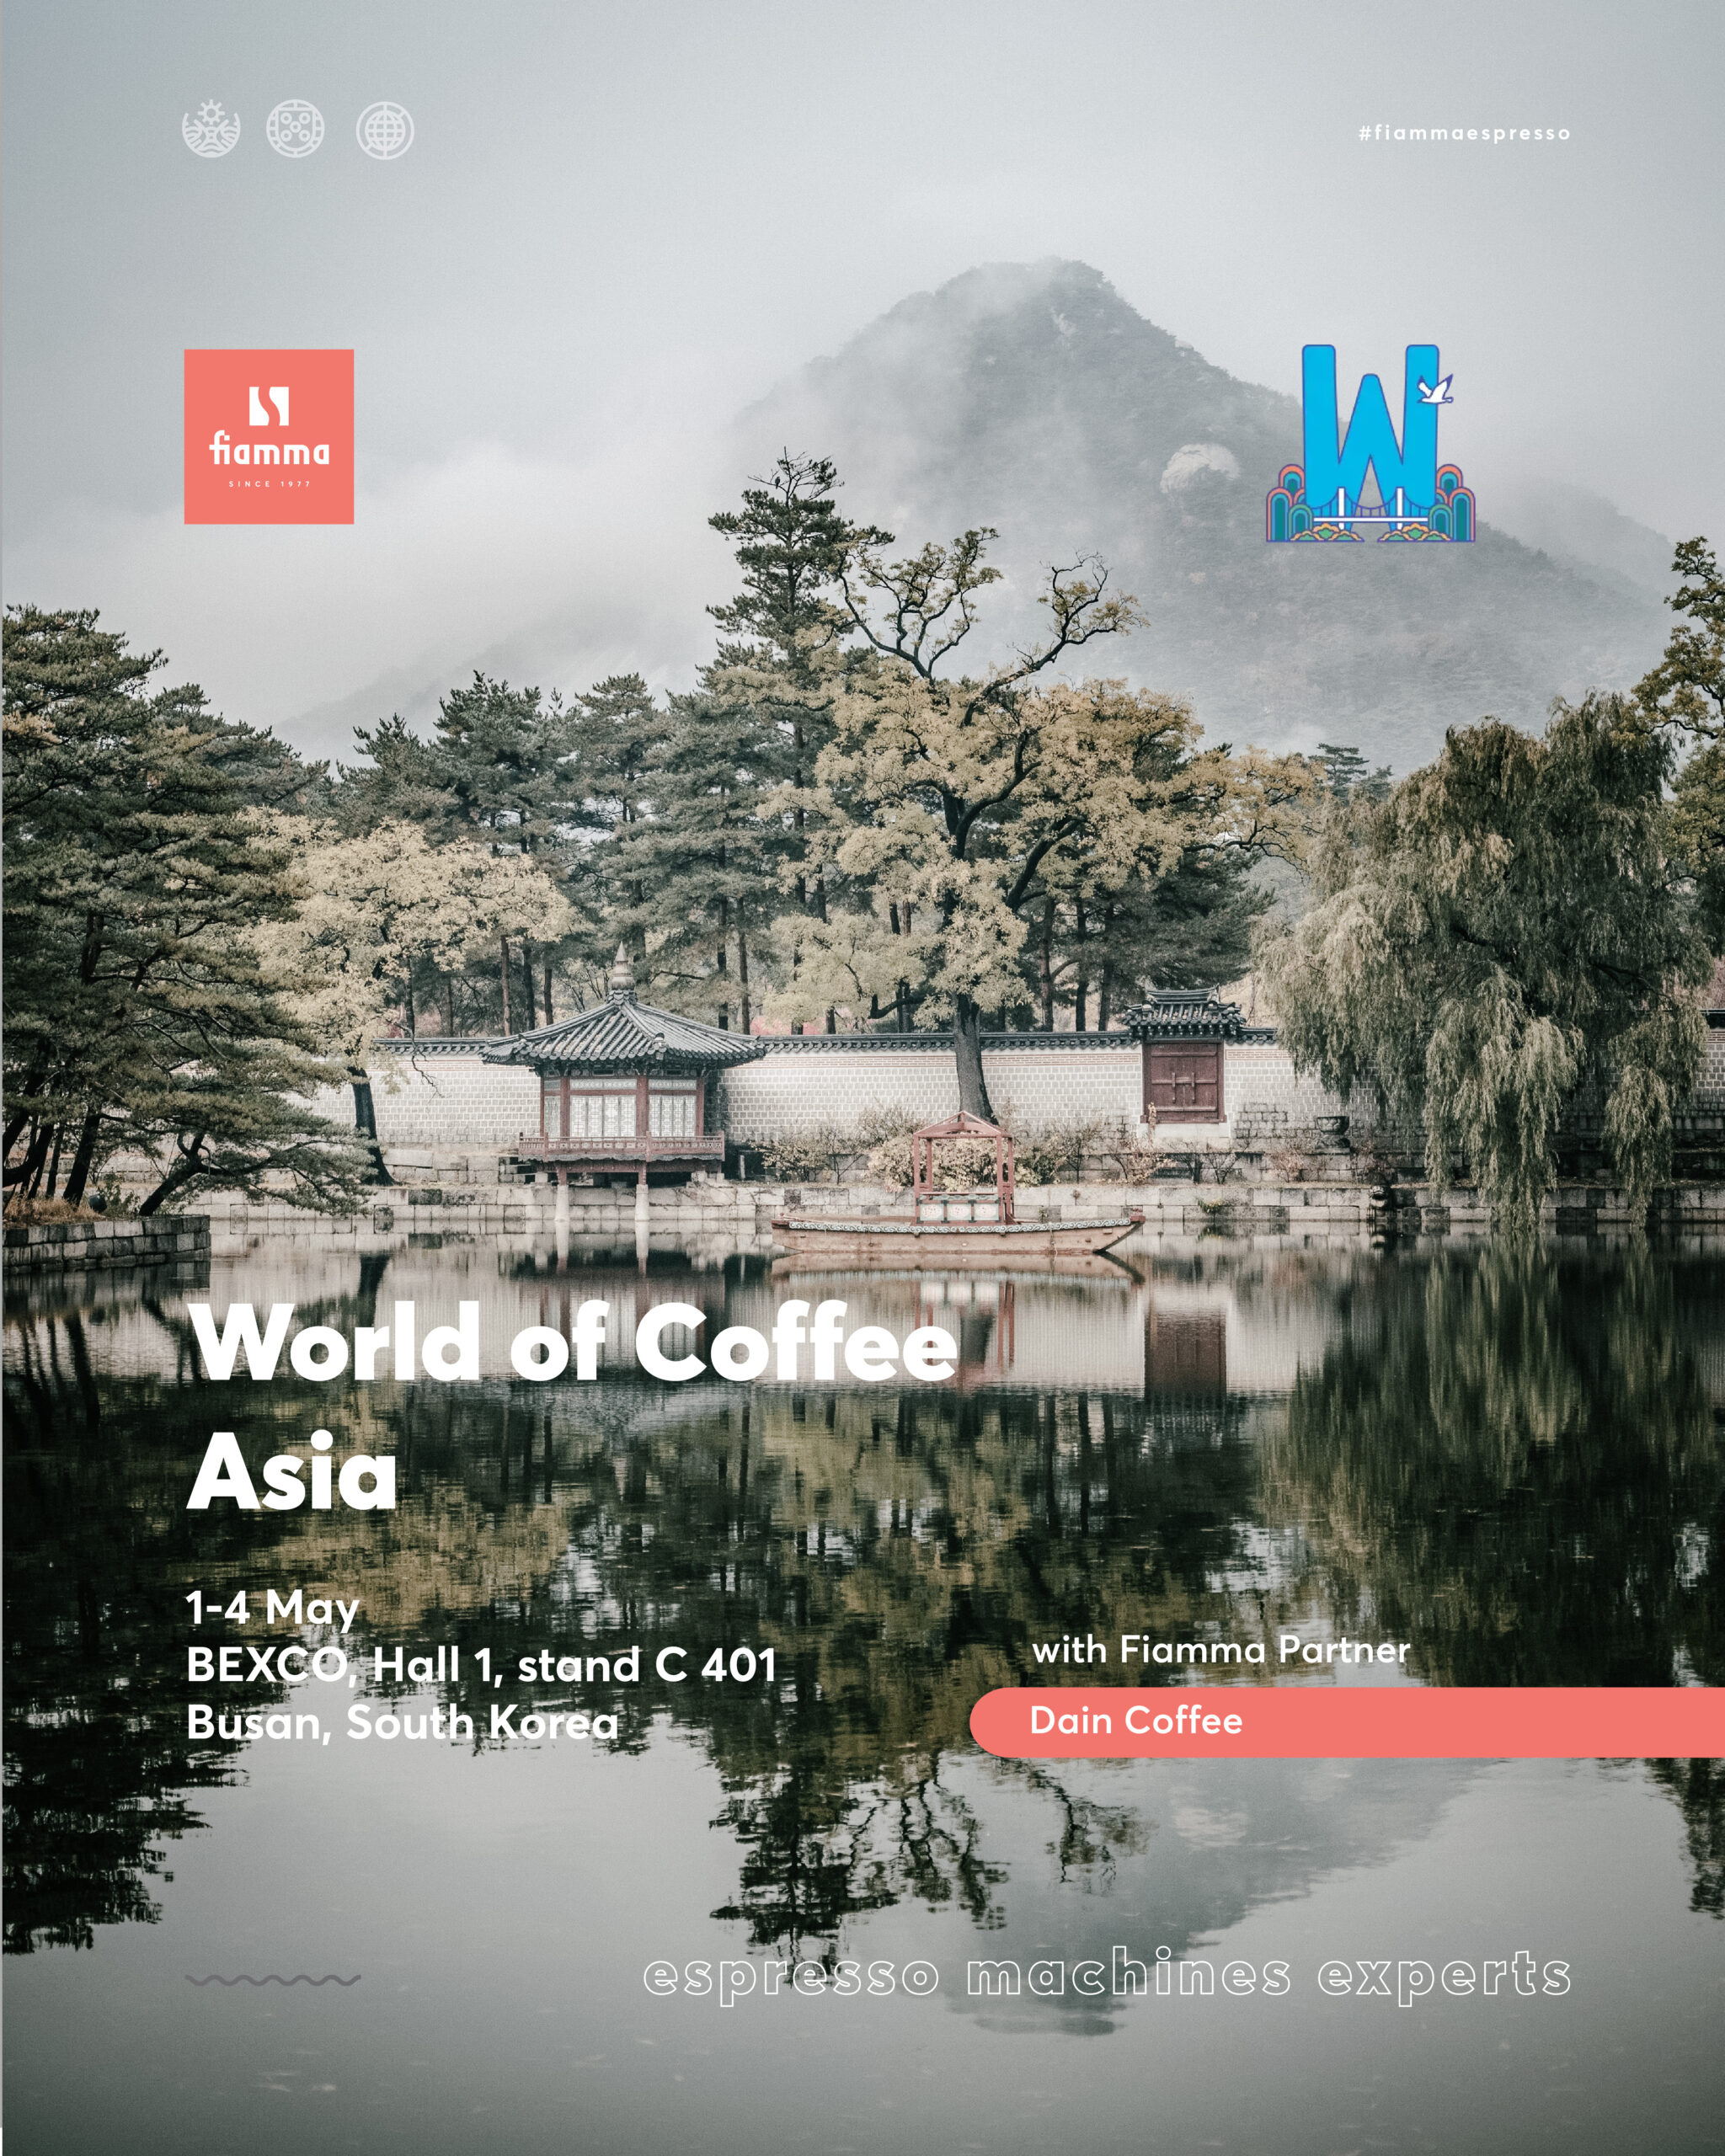 Fiamma Espresso na World of Coffee Asia em Busan, Coreia do Sul